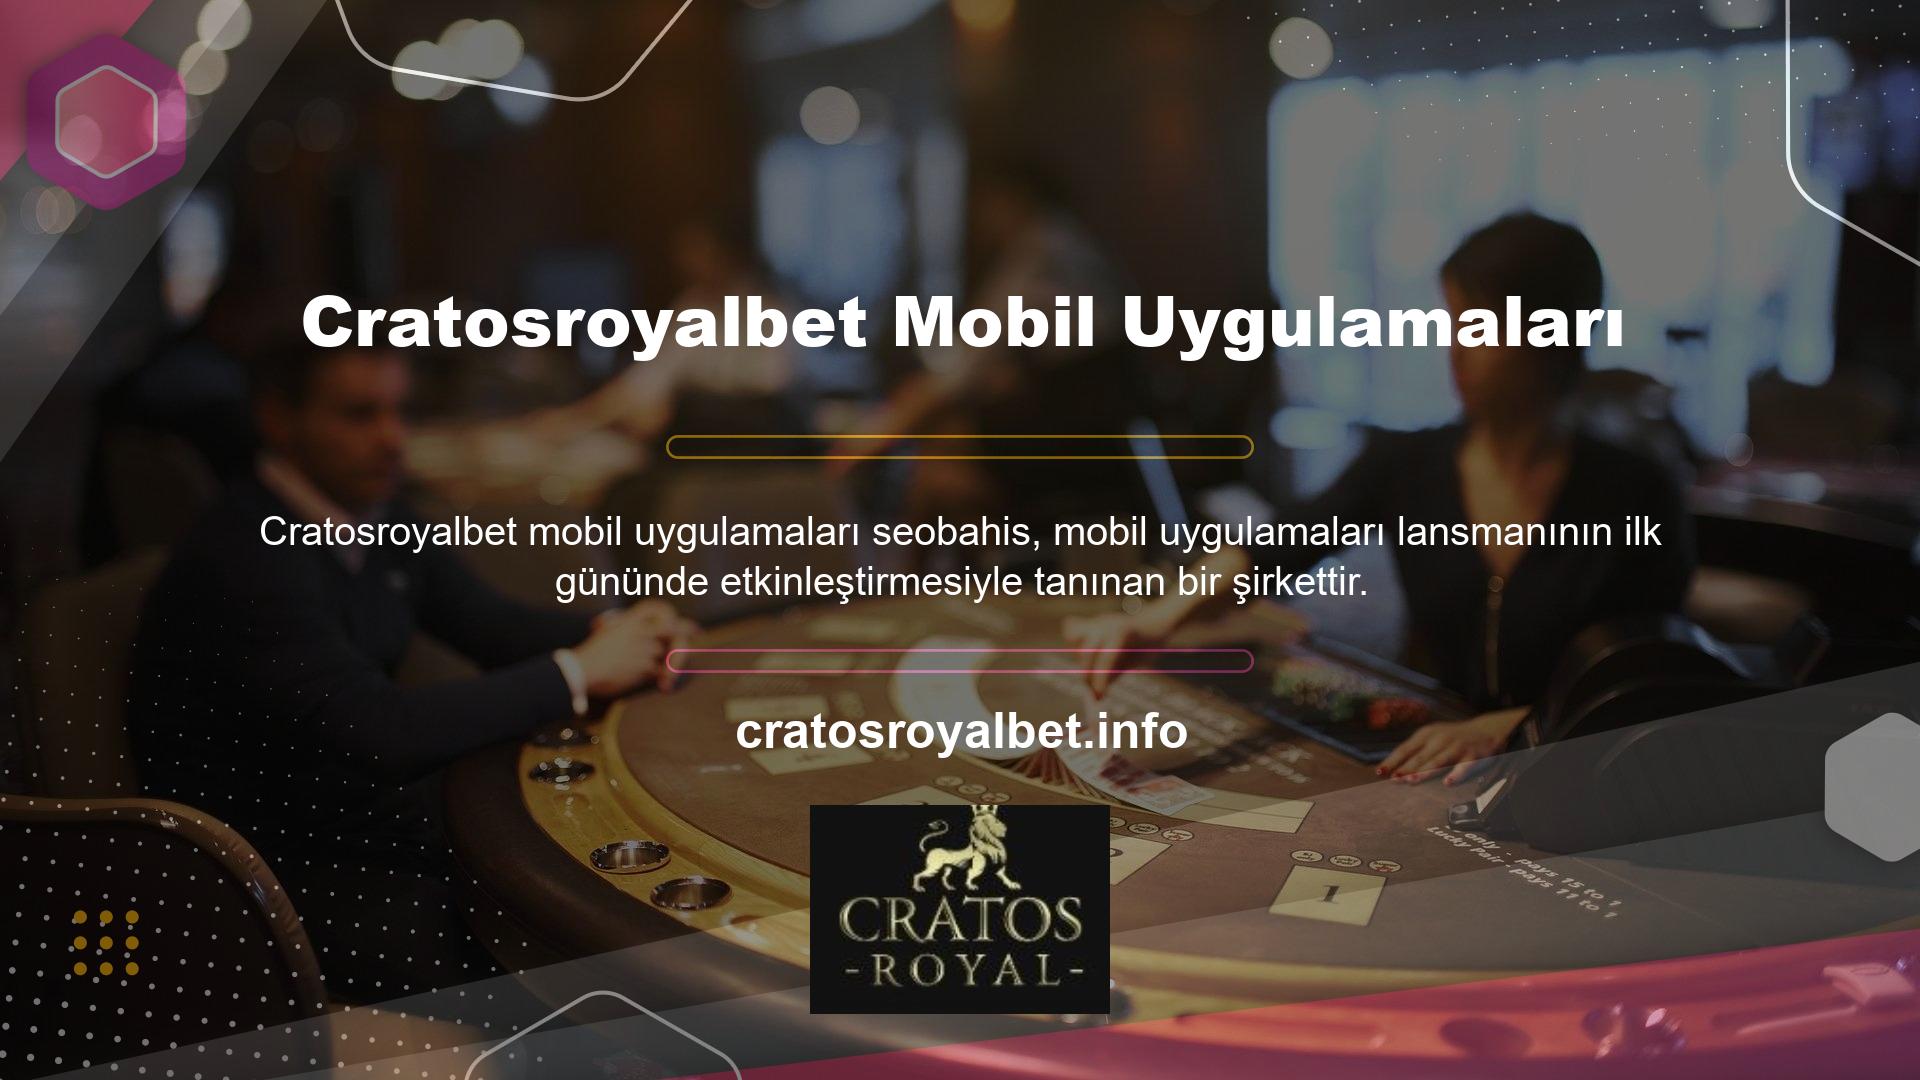 Cratosroyalbet mobil sitesi, masaüstünden farklı arayüzü ile dikkat çekiyor